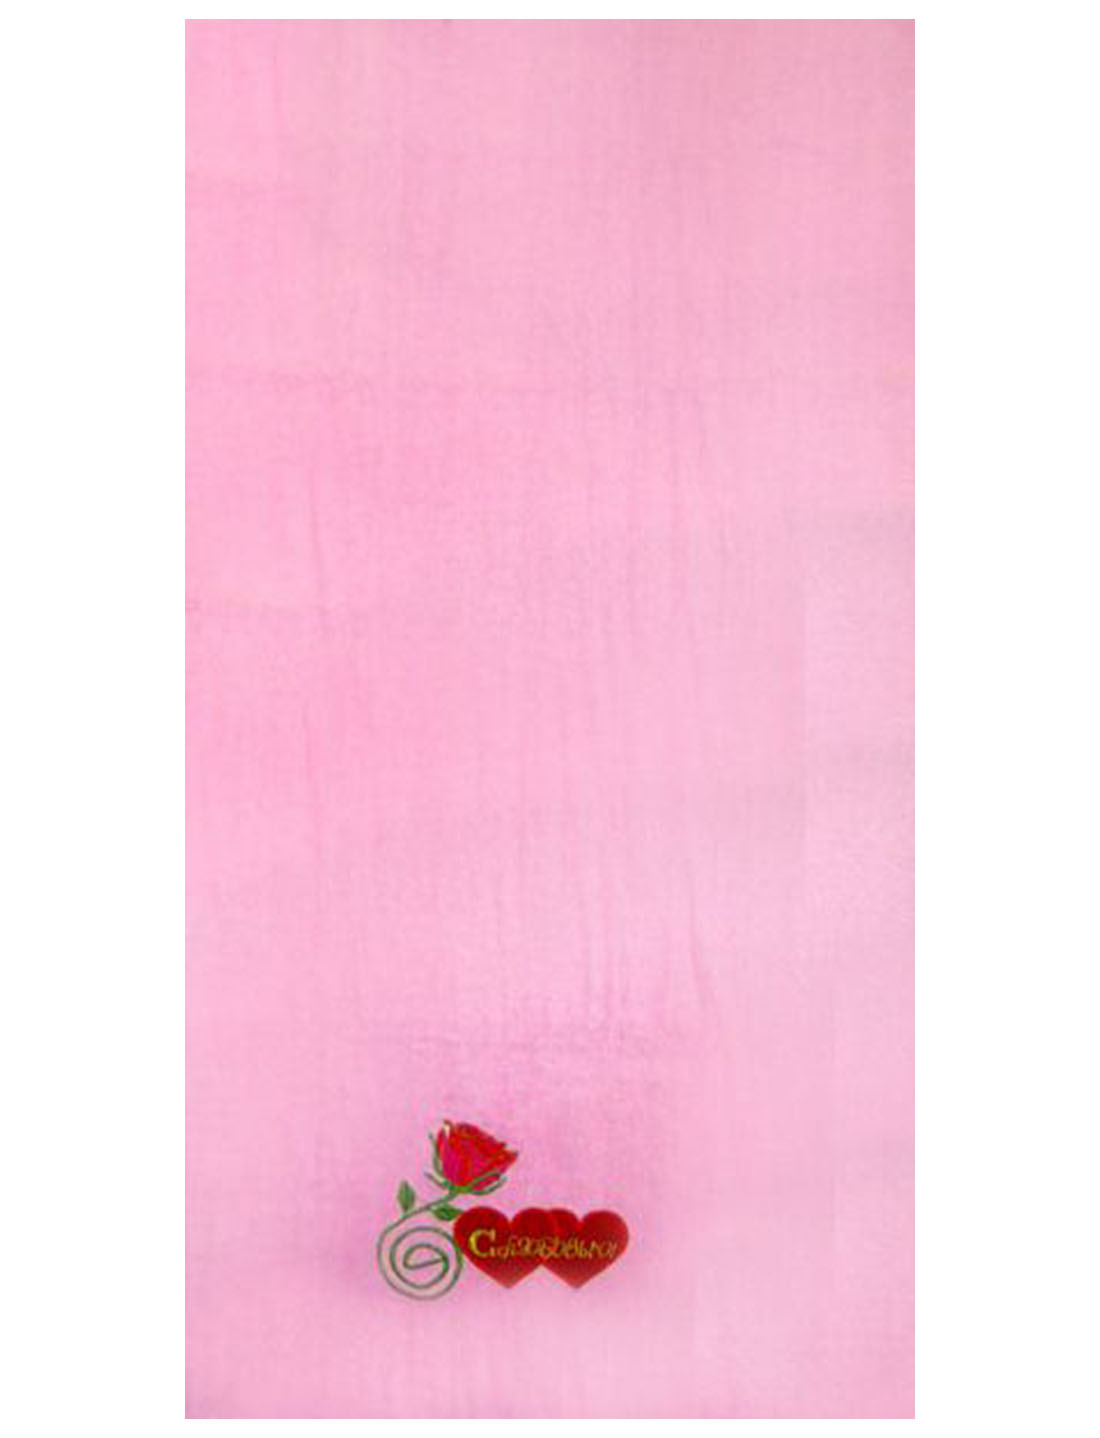 Полотенце махровое 45х85 ПС-12 (розовый)